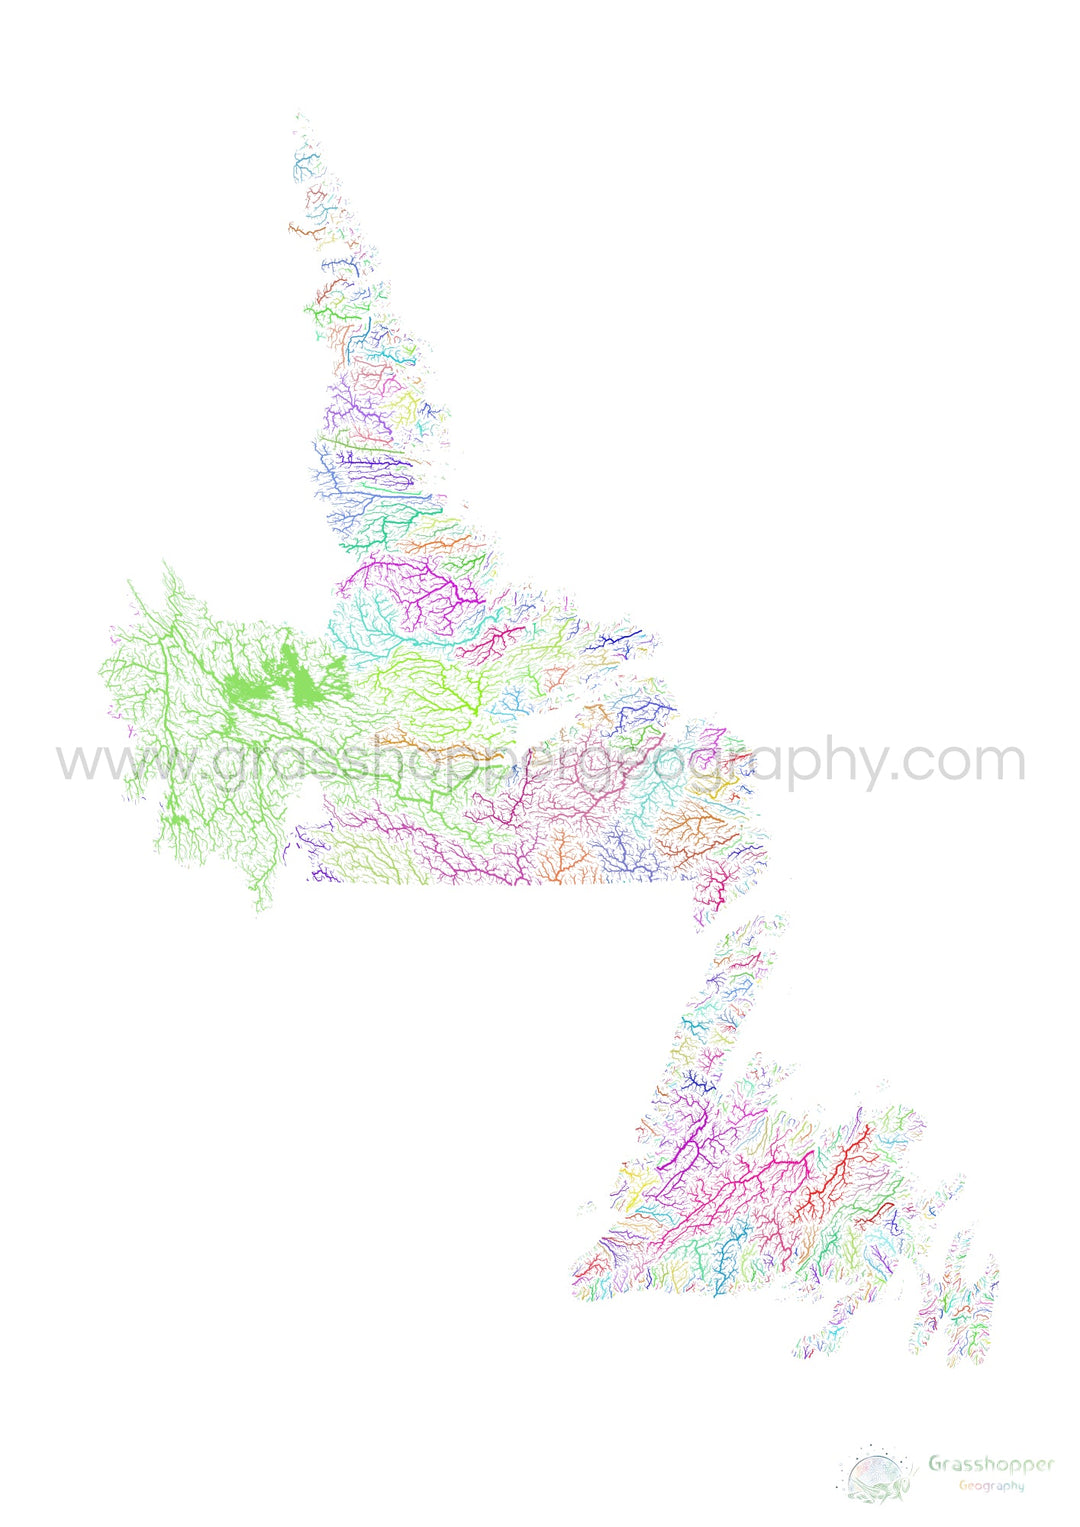 Terranova y Labrador - Mapa de la cuenca fluvial, arco iris sobre blanco - Impresión de bellas artes